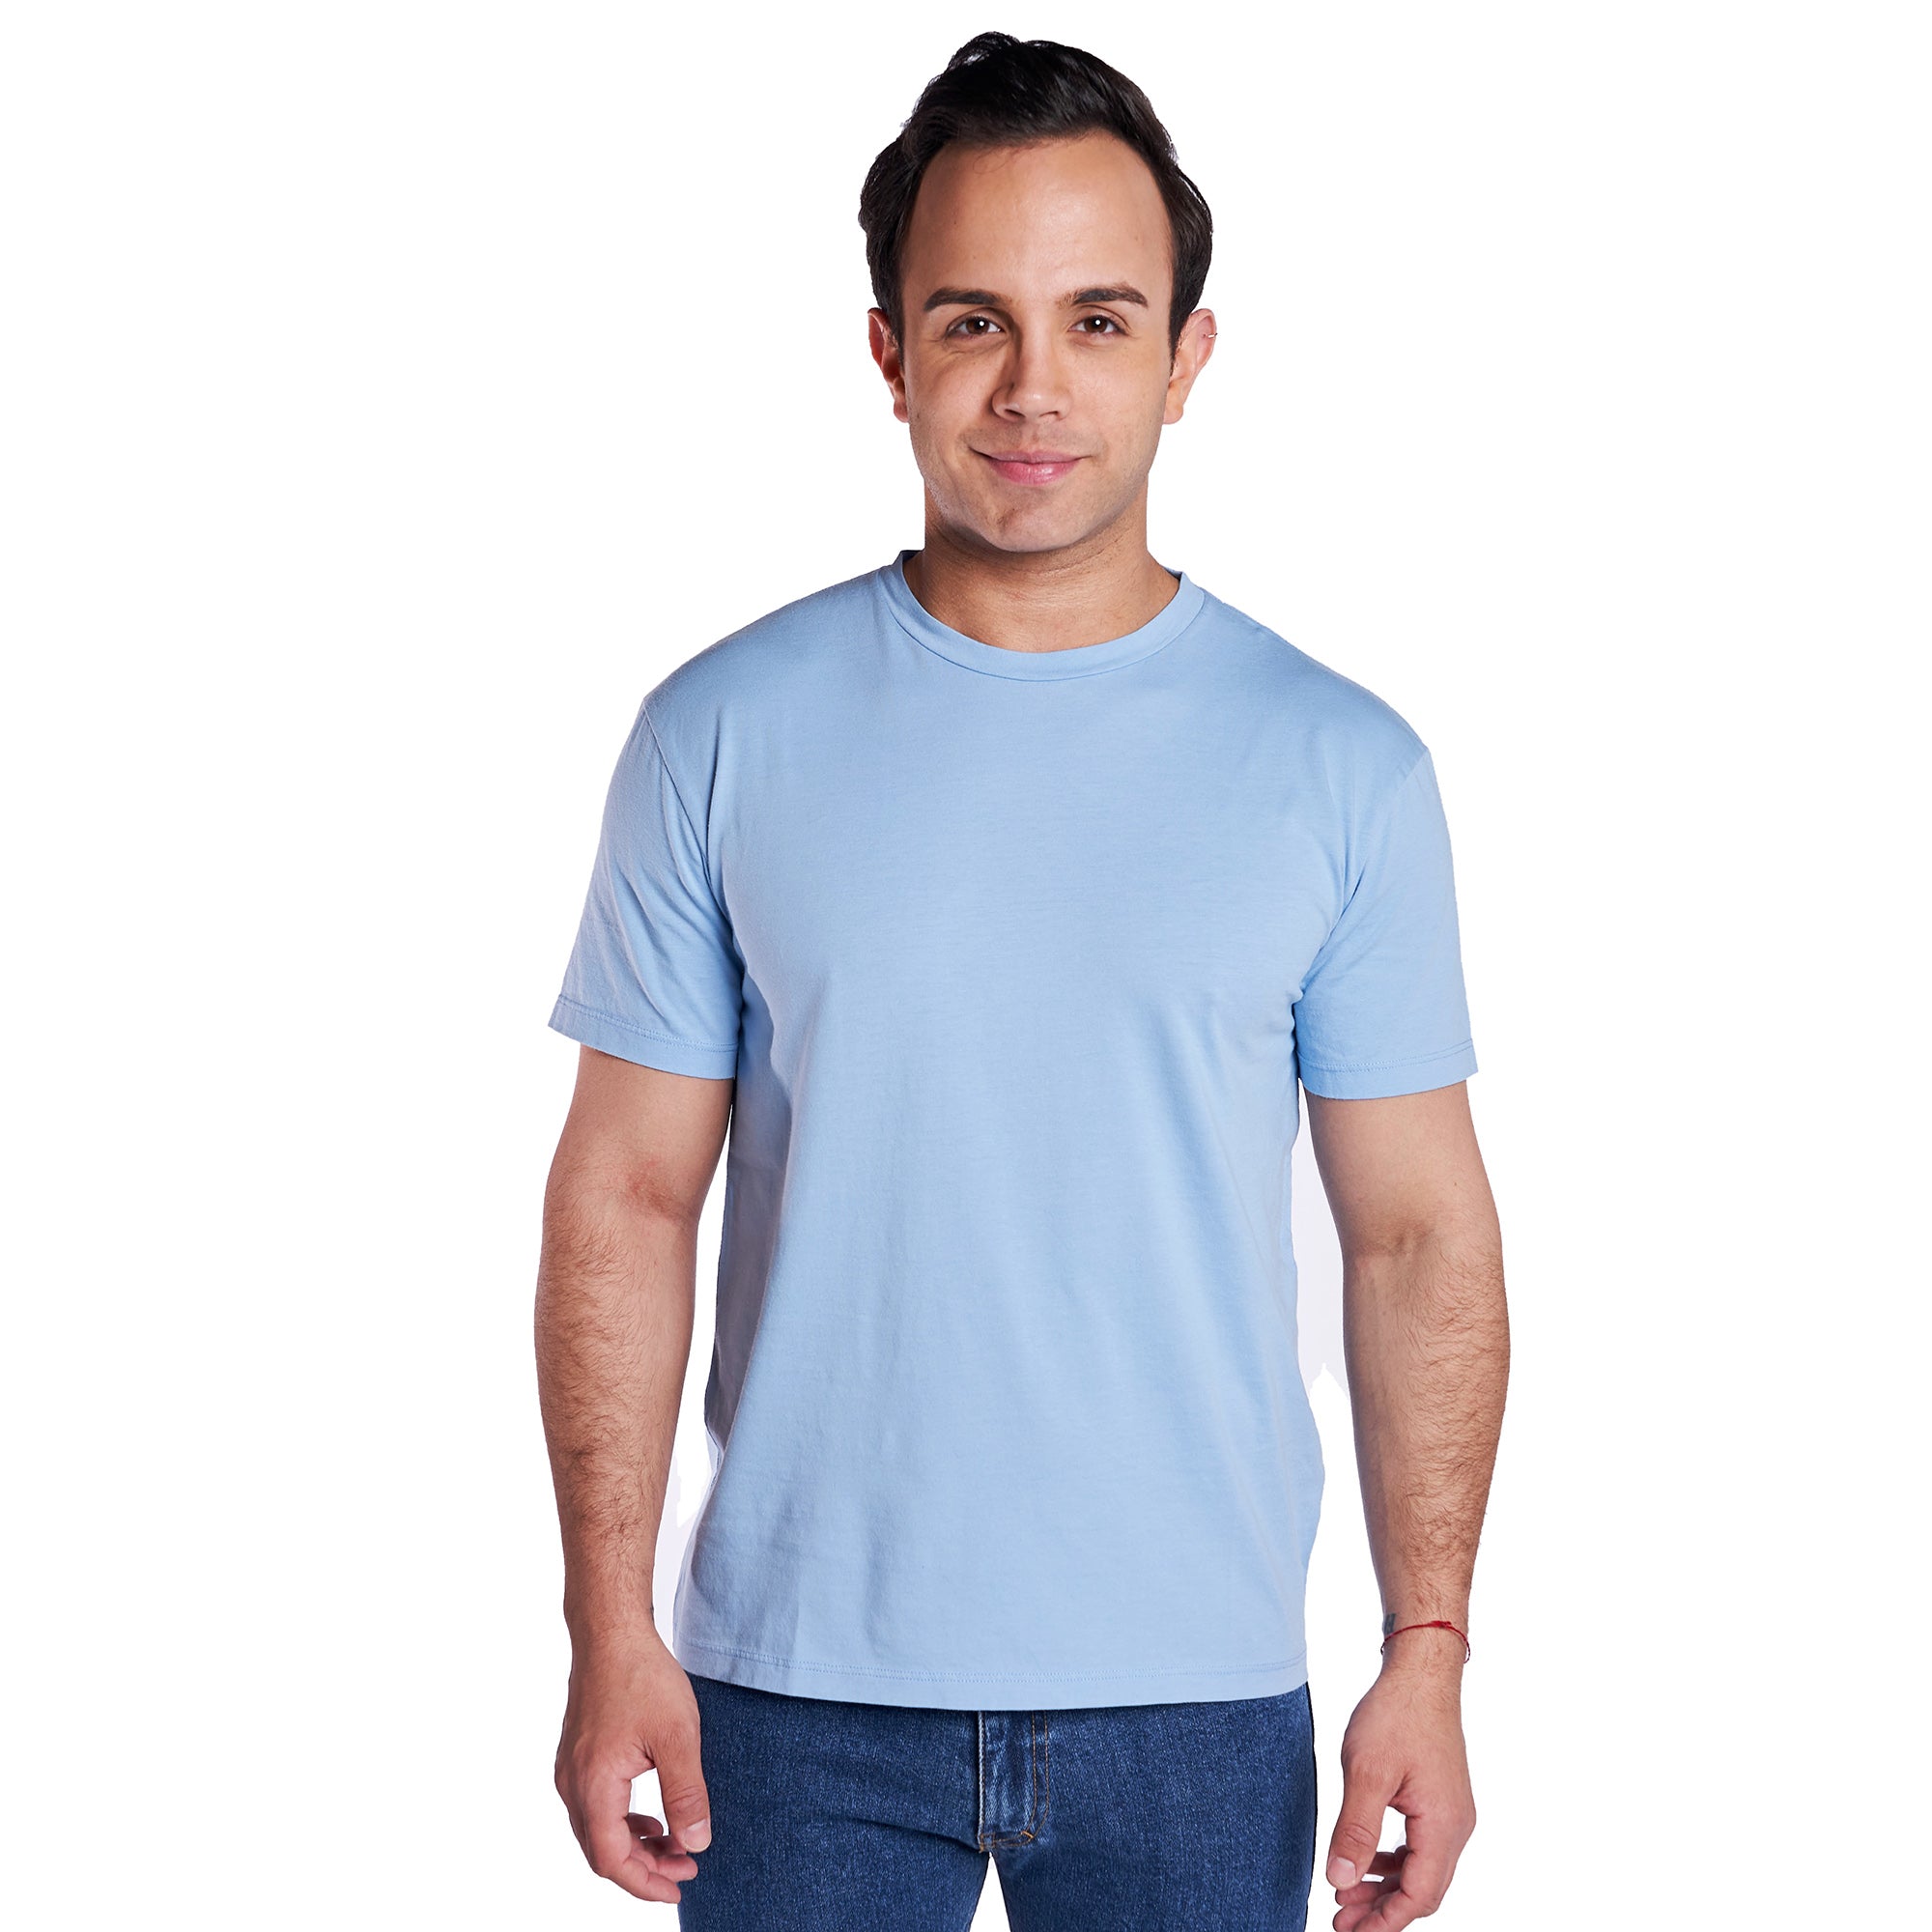 Vintage Crew T-Shirt - Pale Blue